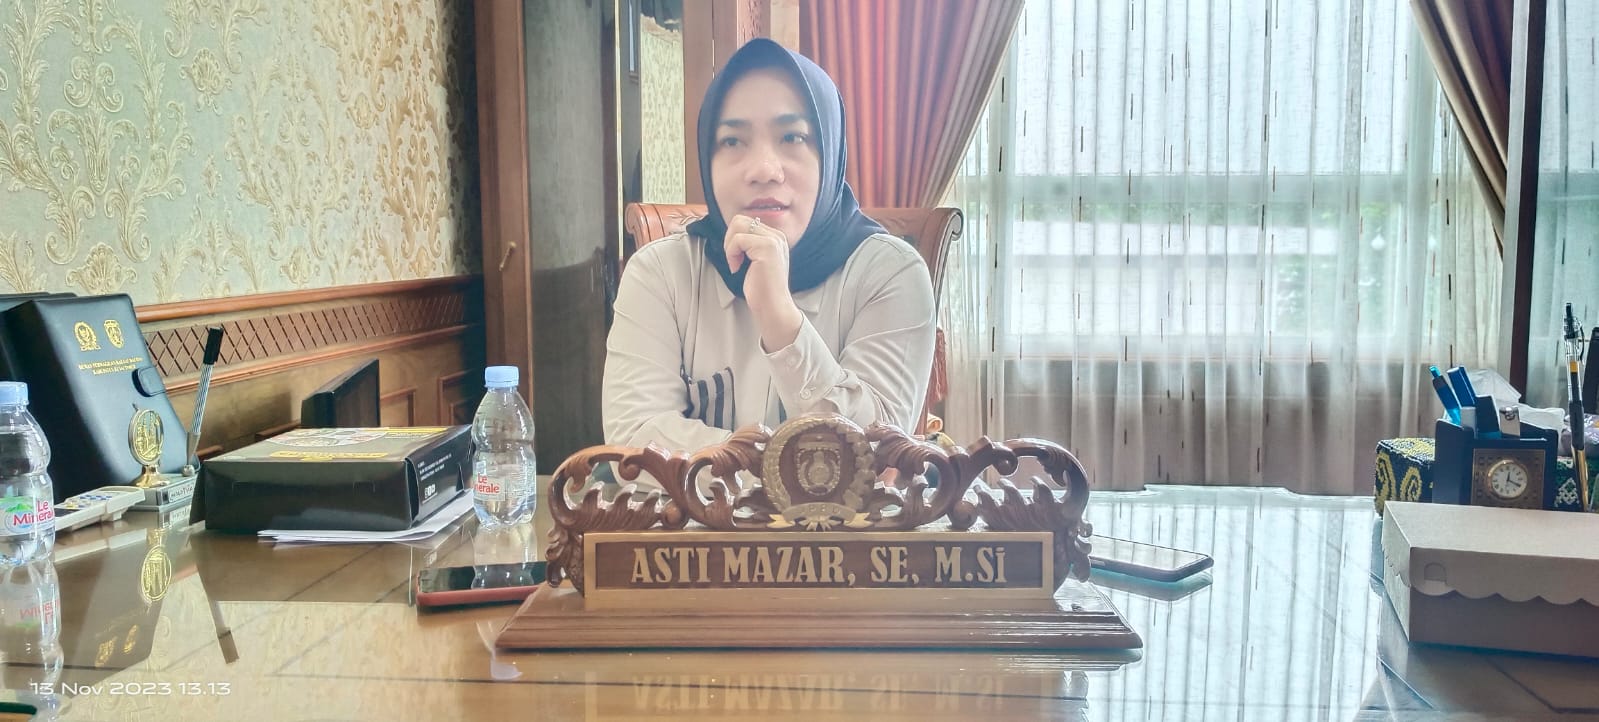 Asti Mazar: Kegiatan di Teluk Lombok Bentuk Dukungan untuk UMKM